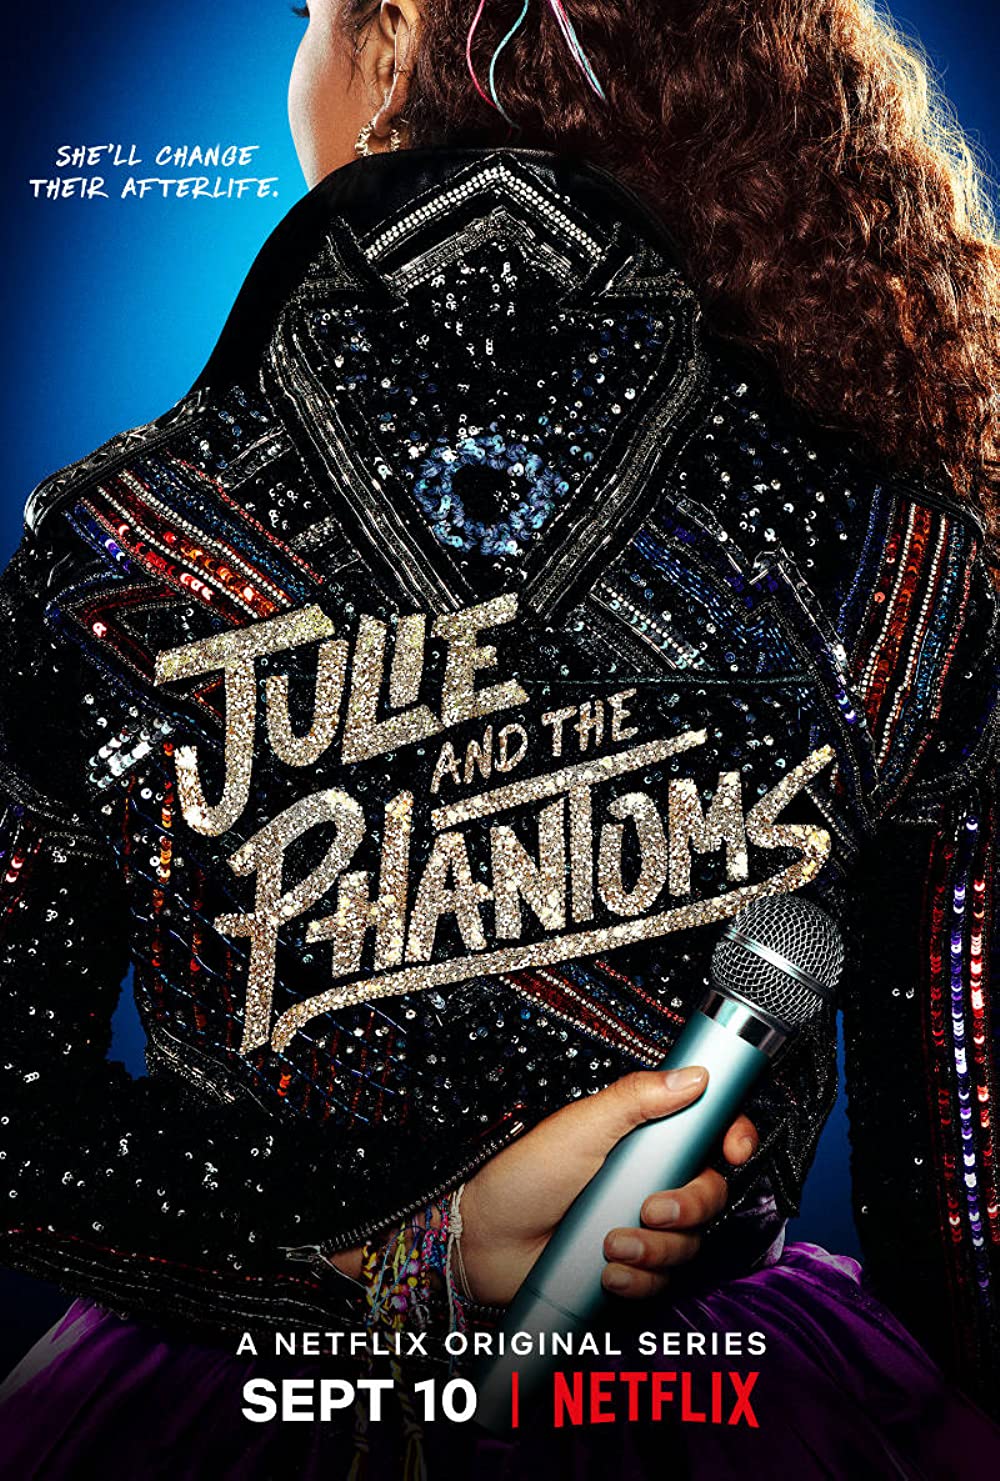 Filmbeschreibung zu Julie and the Phantoms